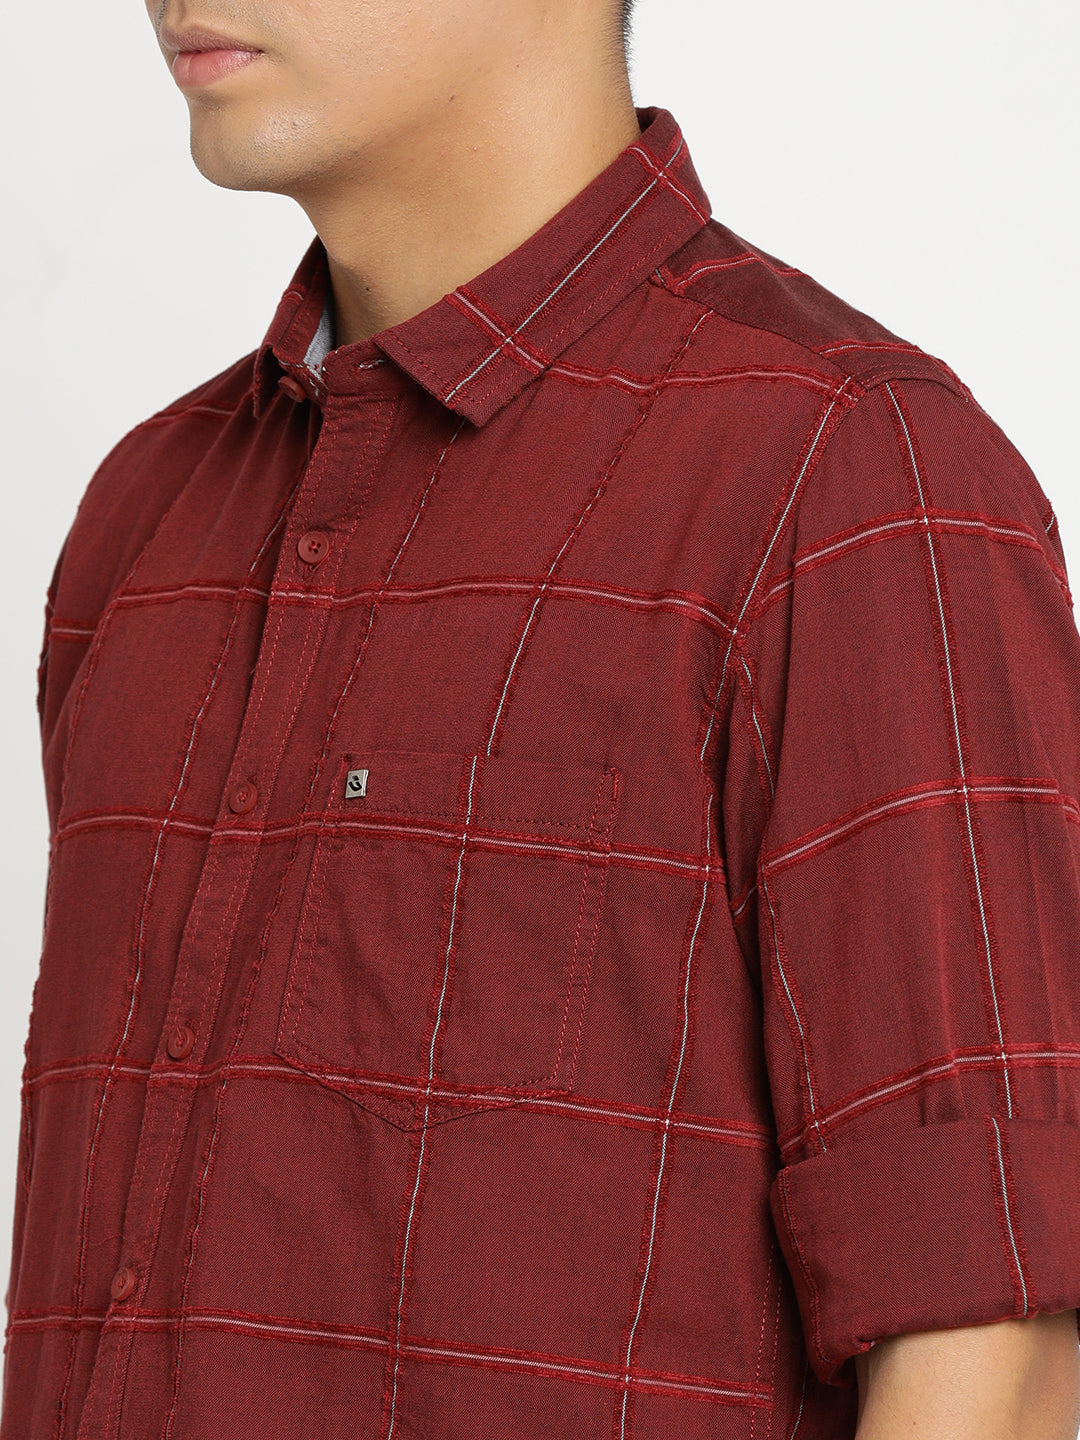 Red Checkerd Shirt